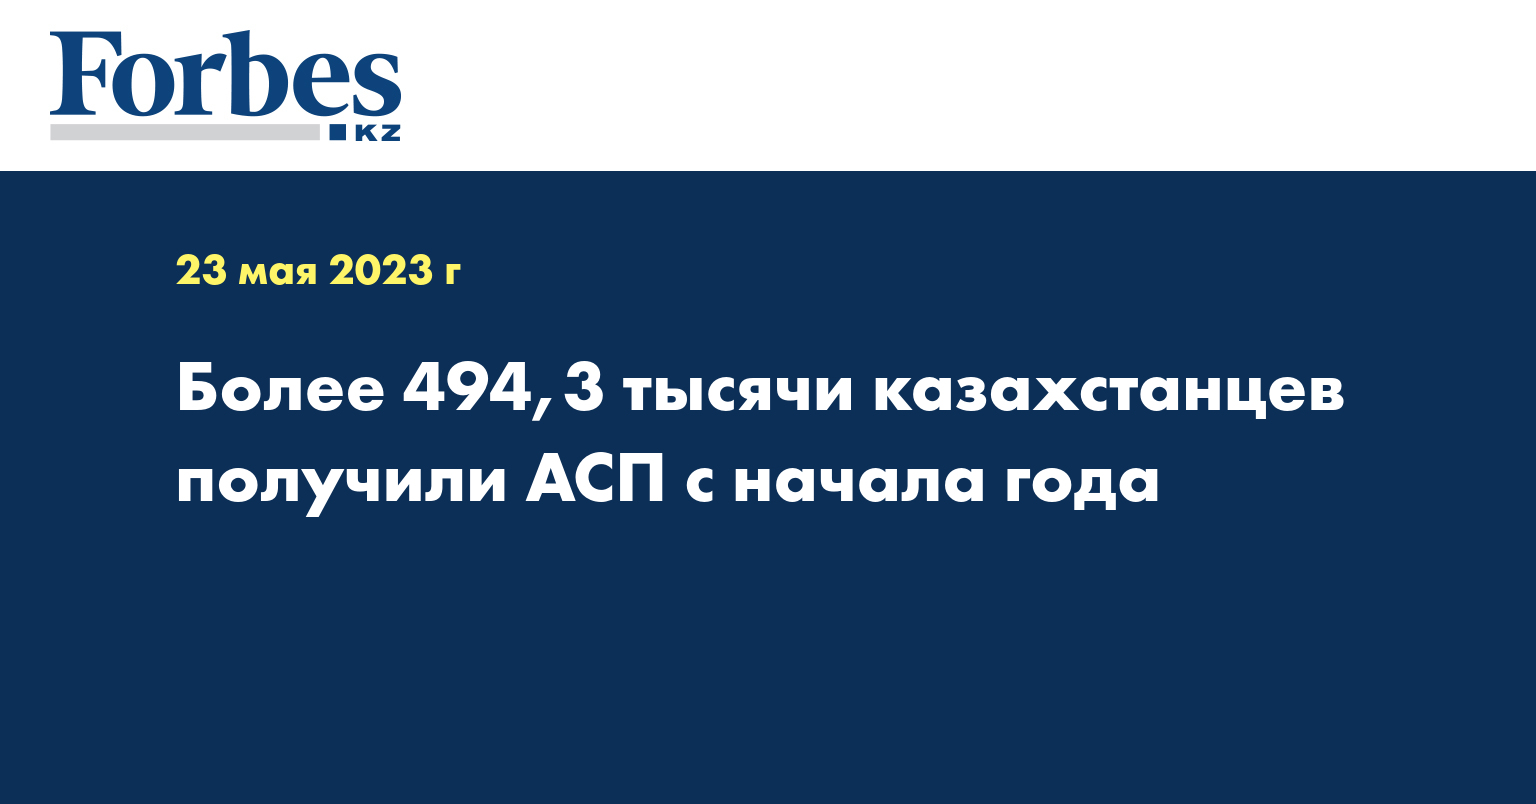 Более 494,3 тысячи казахстанцев получили АСП с начала года